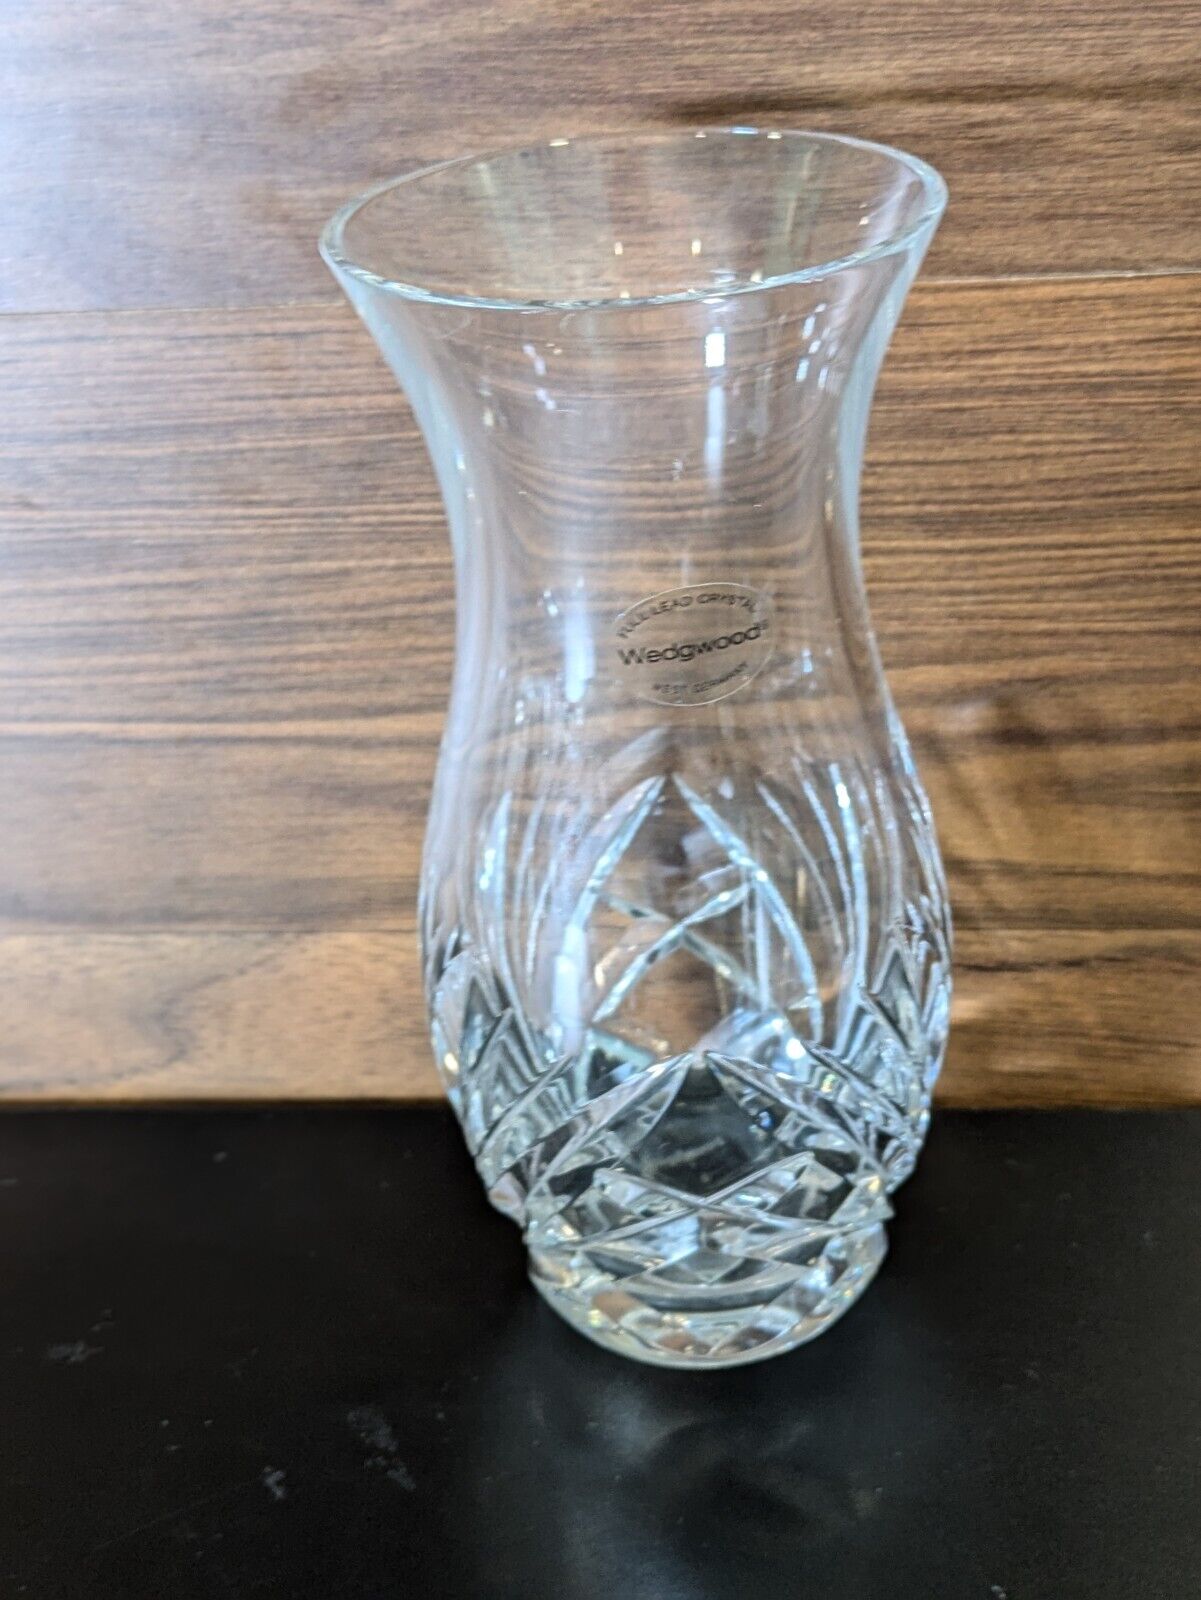 Wedgwood Full Lead Crystal Vase W. Germany Original Sticker